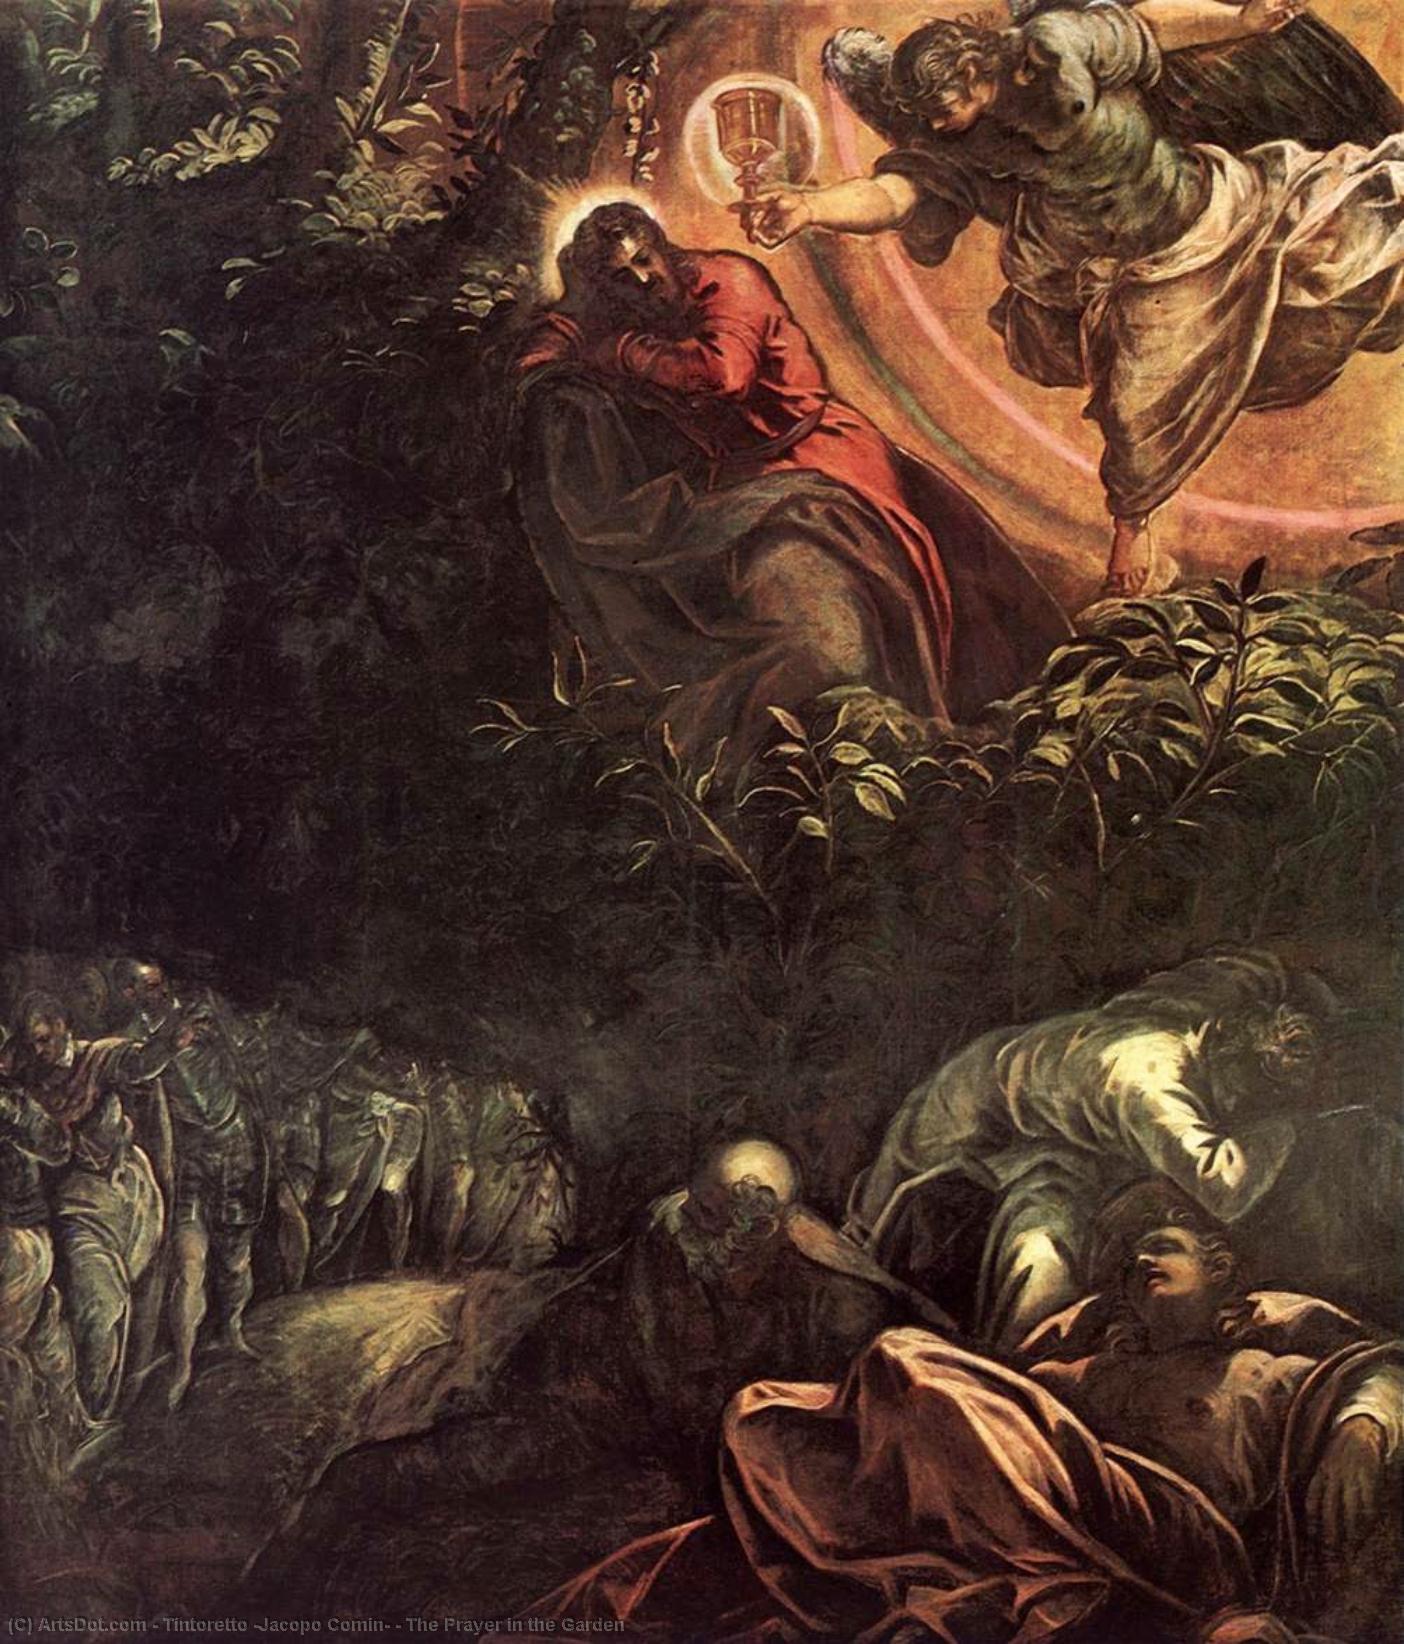 WikiOO.org - Encyclopedia of Fine Arts - Malba, Artwork Tintoretto (Jacopo Comin) - The Prayer in the Garden